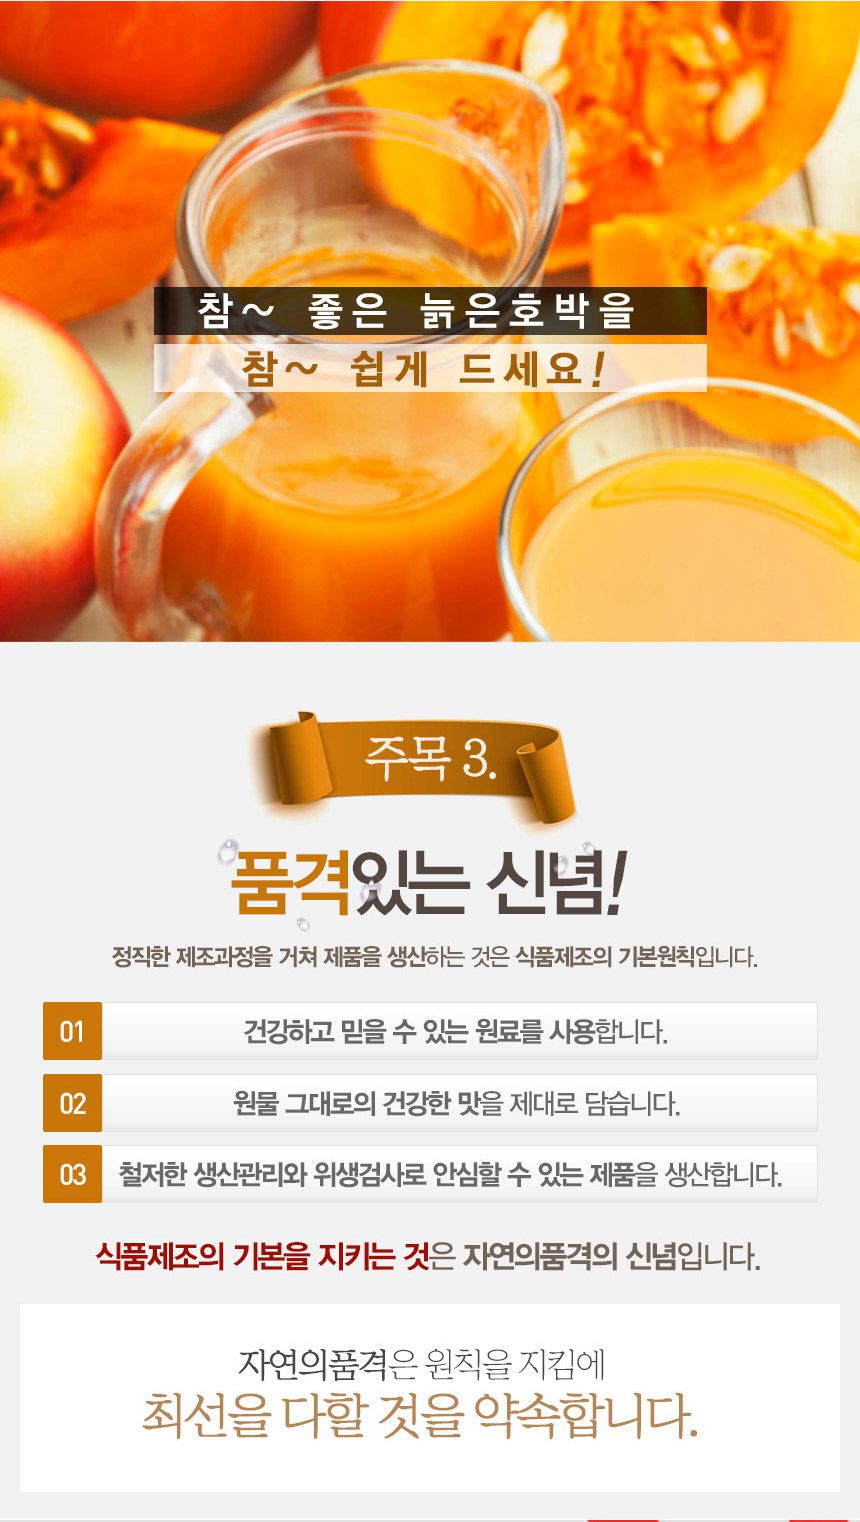 韓國食品-[GNM] 품격있는 호박즙 90ml*30 (부기, 변비에 대해 좋은 효능)